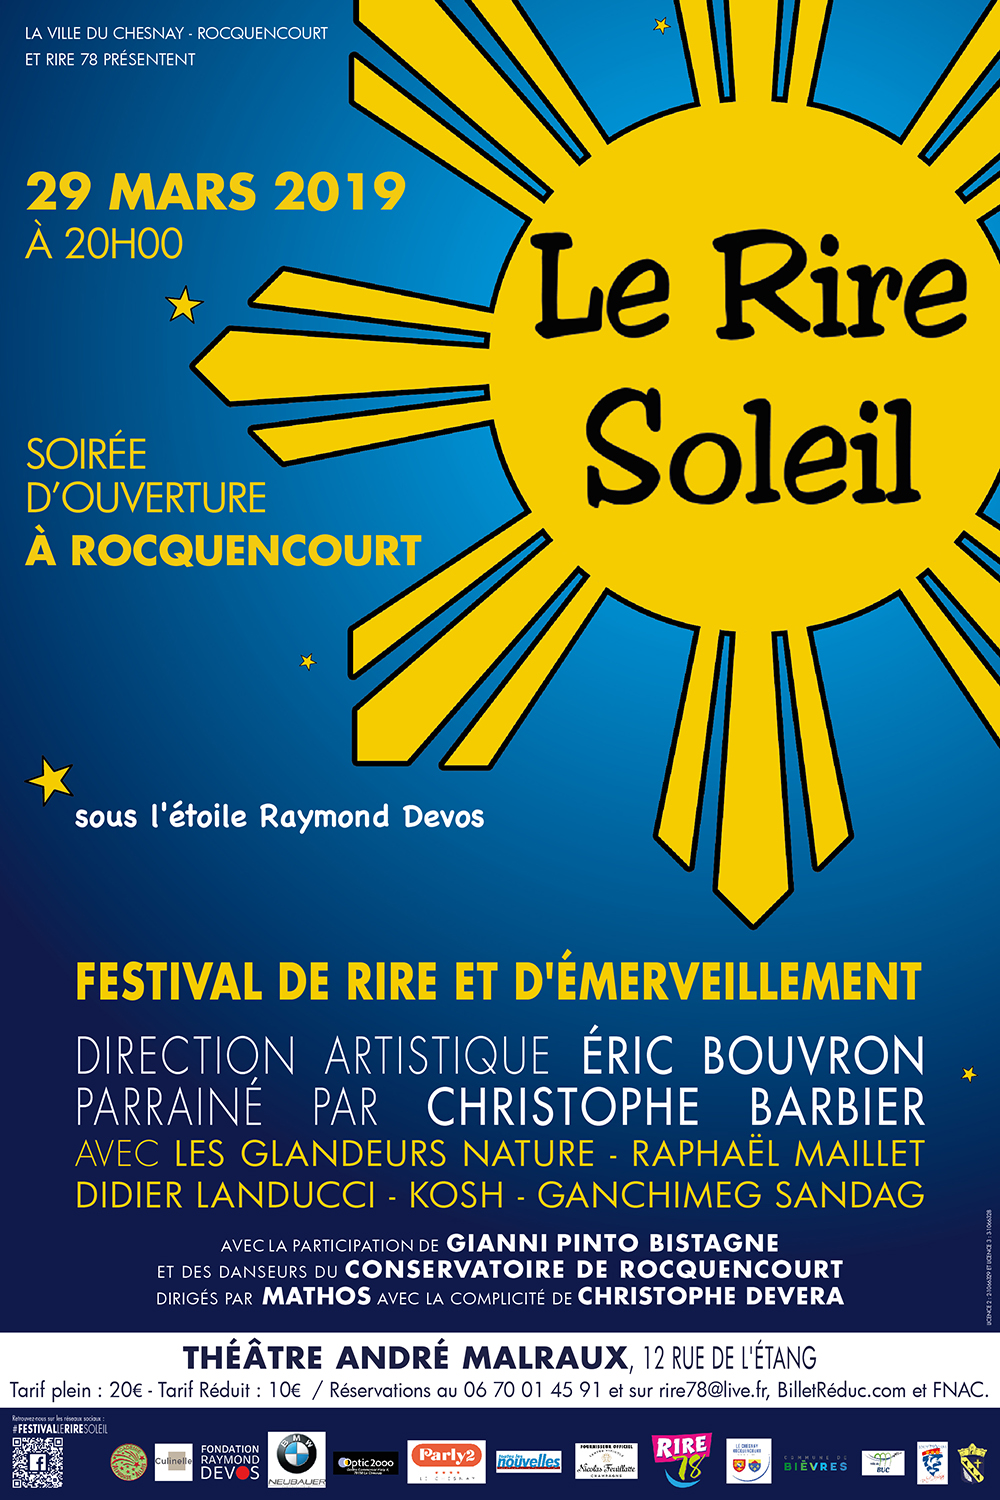 Rire78.com - Le Rire Soleil 2ème Edition - Soirée d'ouverture